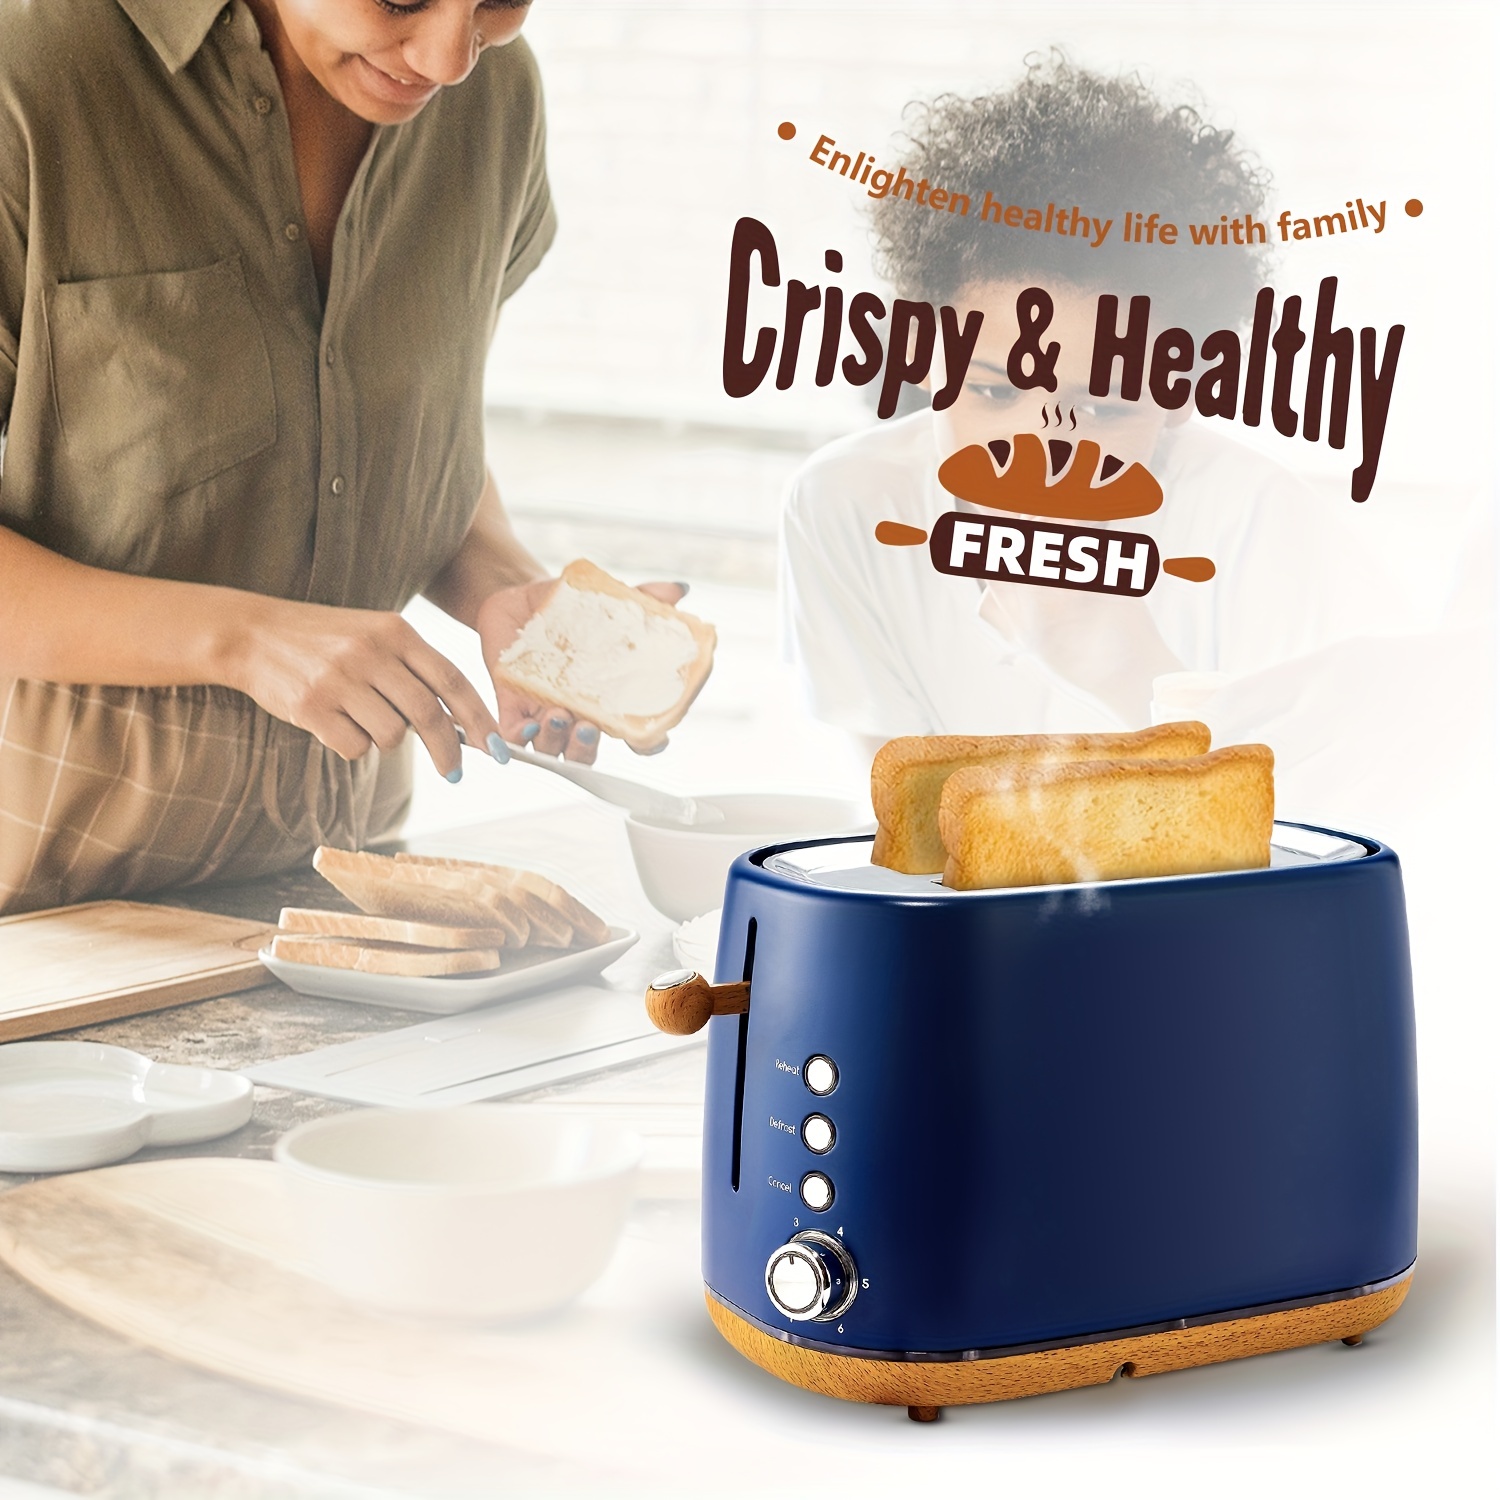 img.kwcdn.com/product/fancyalgo/toaster-api/toaste